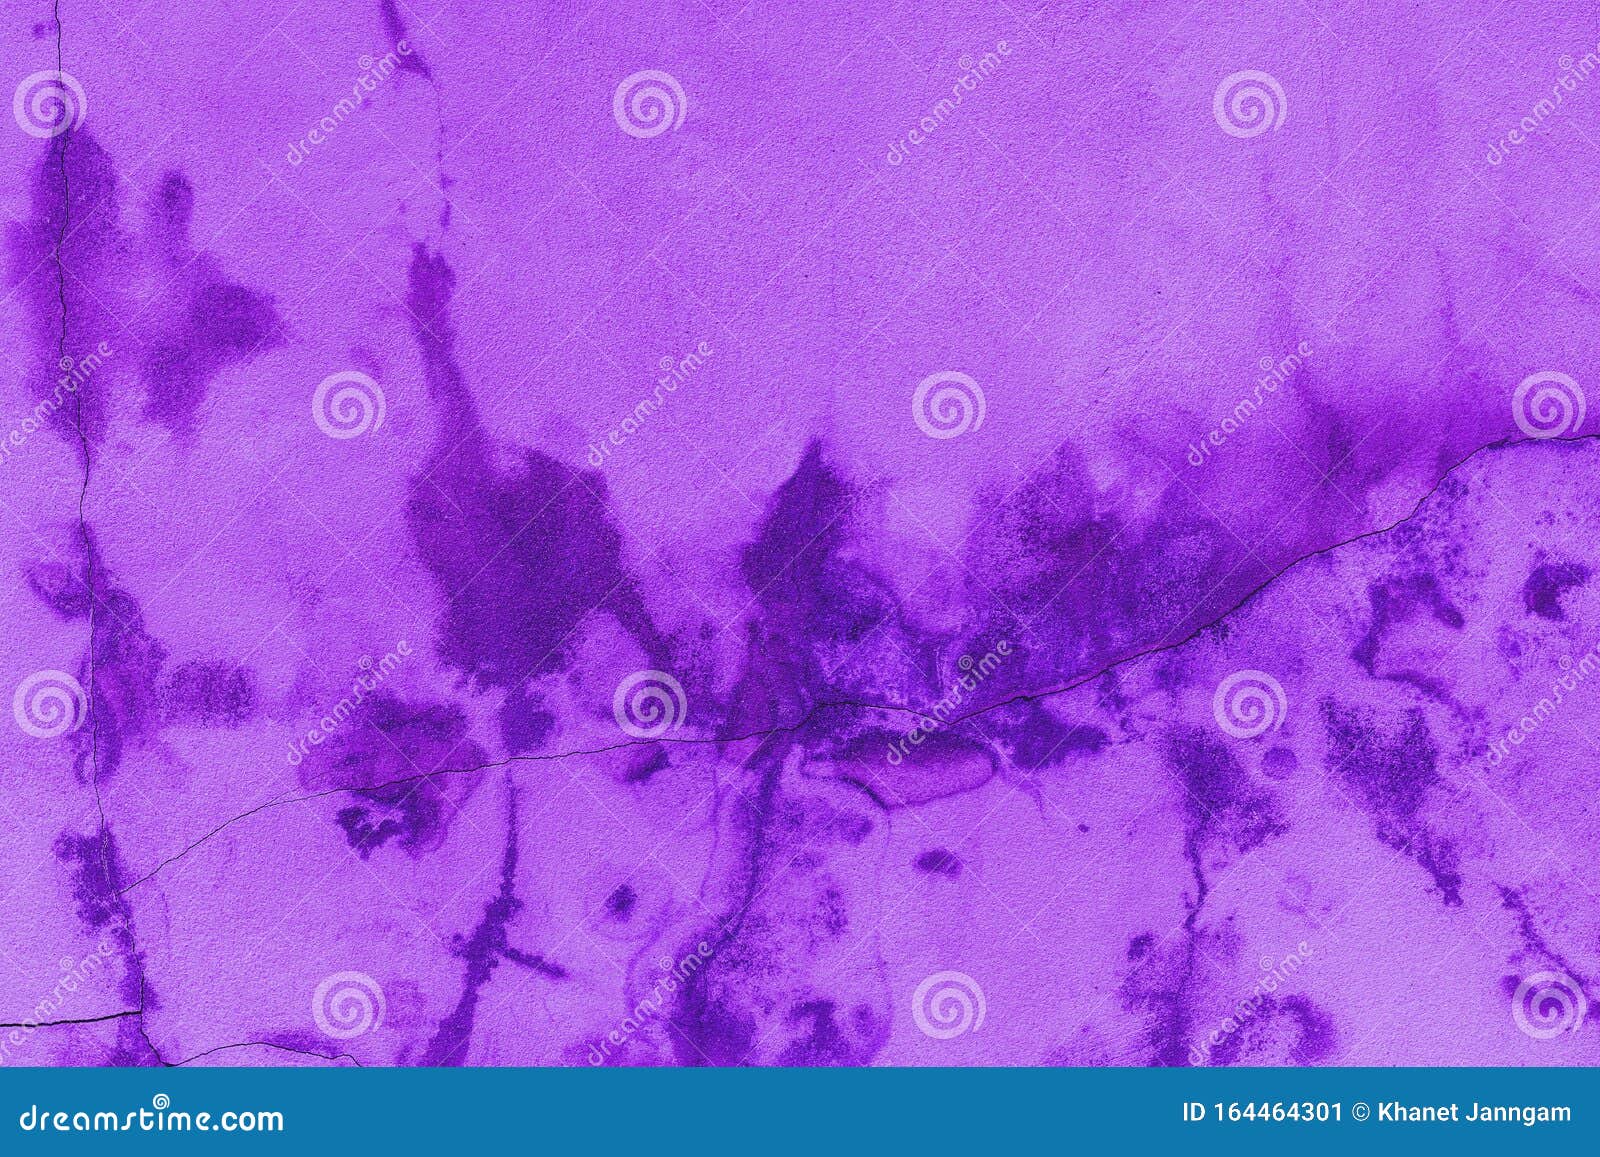 水泥质子紫背景库存图片 图片包括有水泥质子紫背景